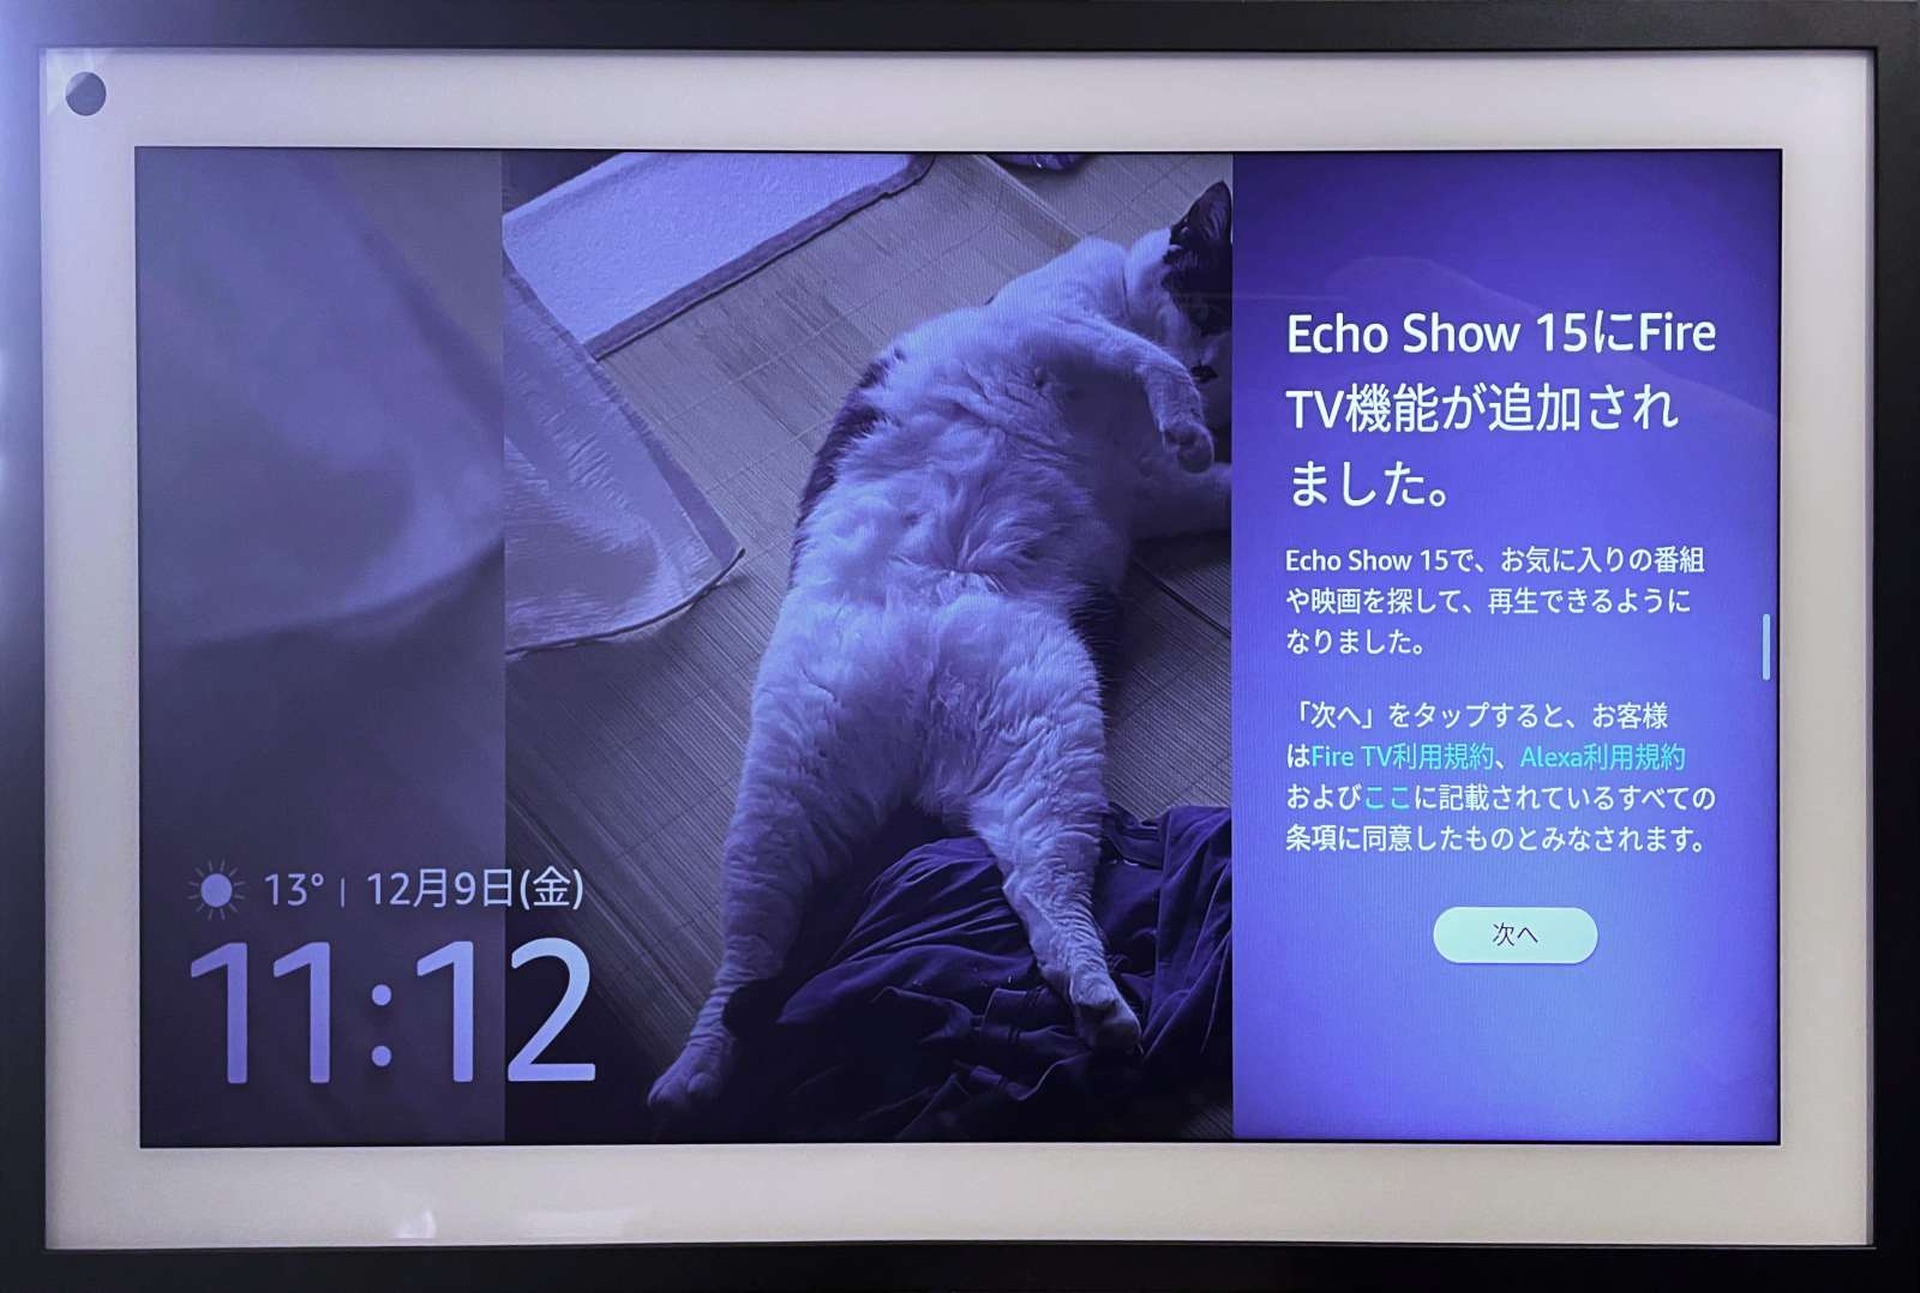 Amazon Echo Show 15をFire TV化するアップデートで、地味にハマって